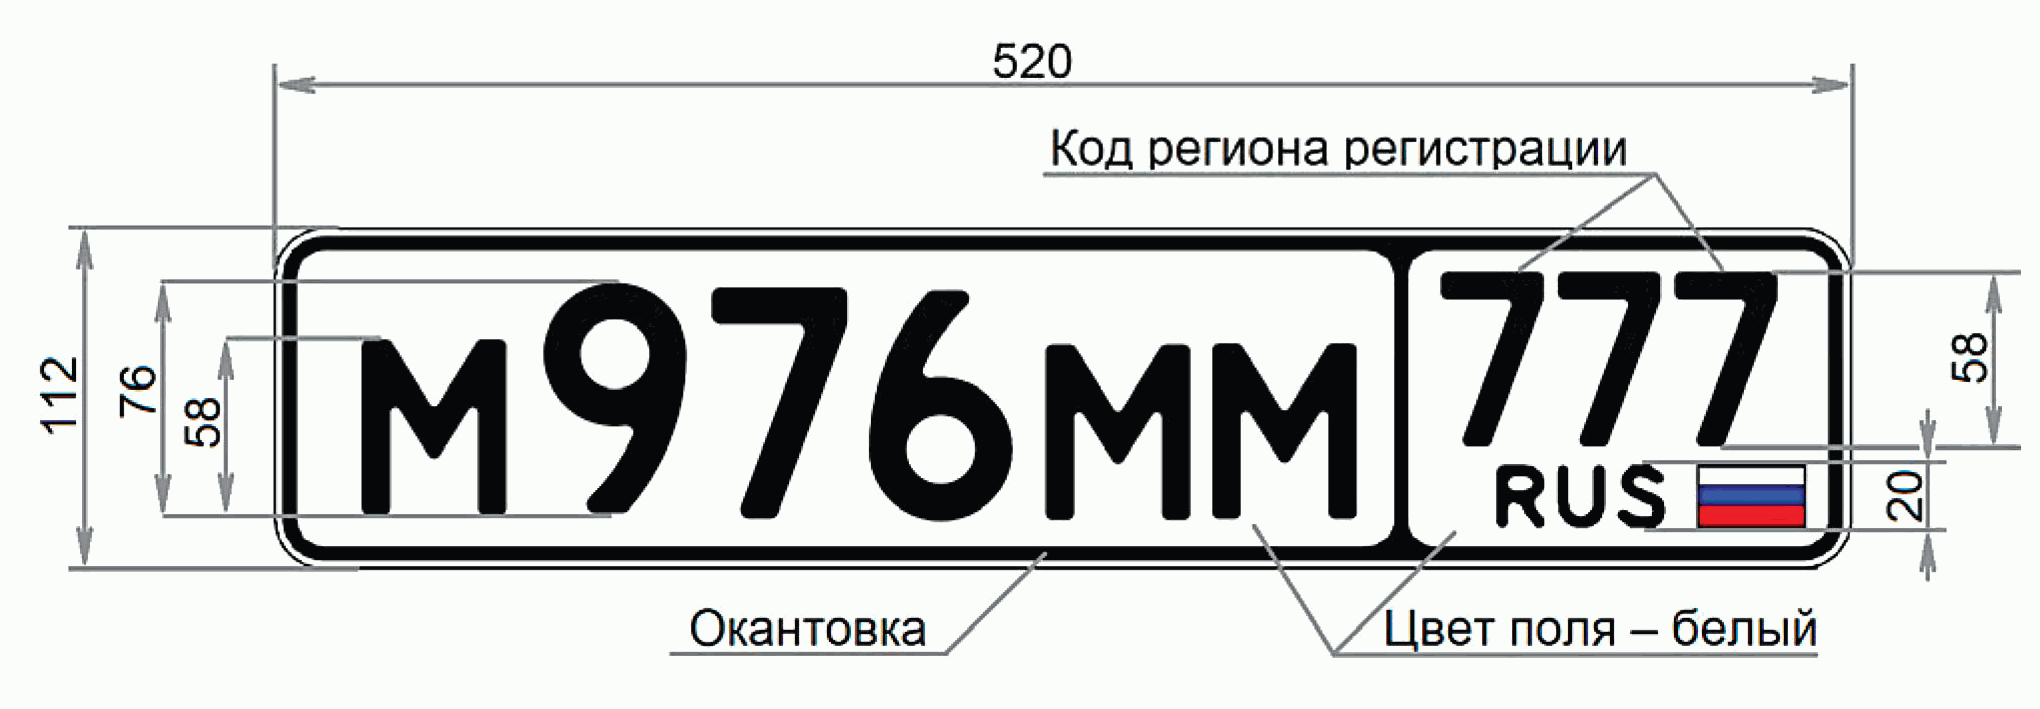 Нужен номер рф. Номерной знак в652сх09. Стандарт автомобильных номеров РФ. Госномер Тип 1а Размеры. Гос рег номер автомобиля.